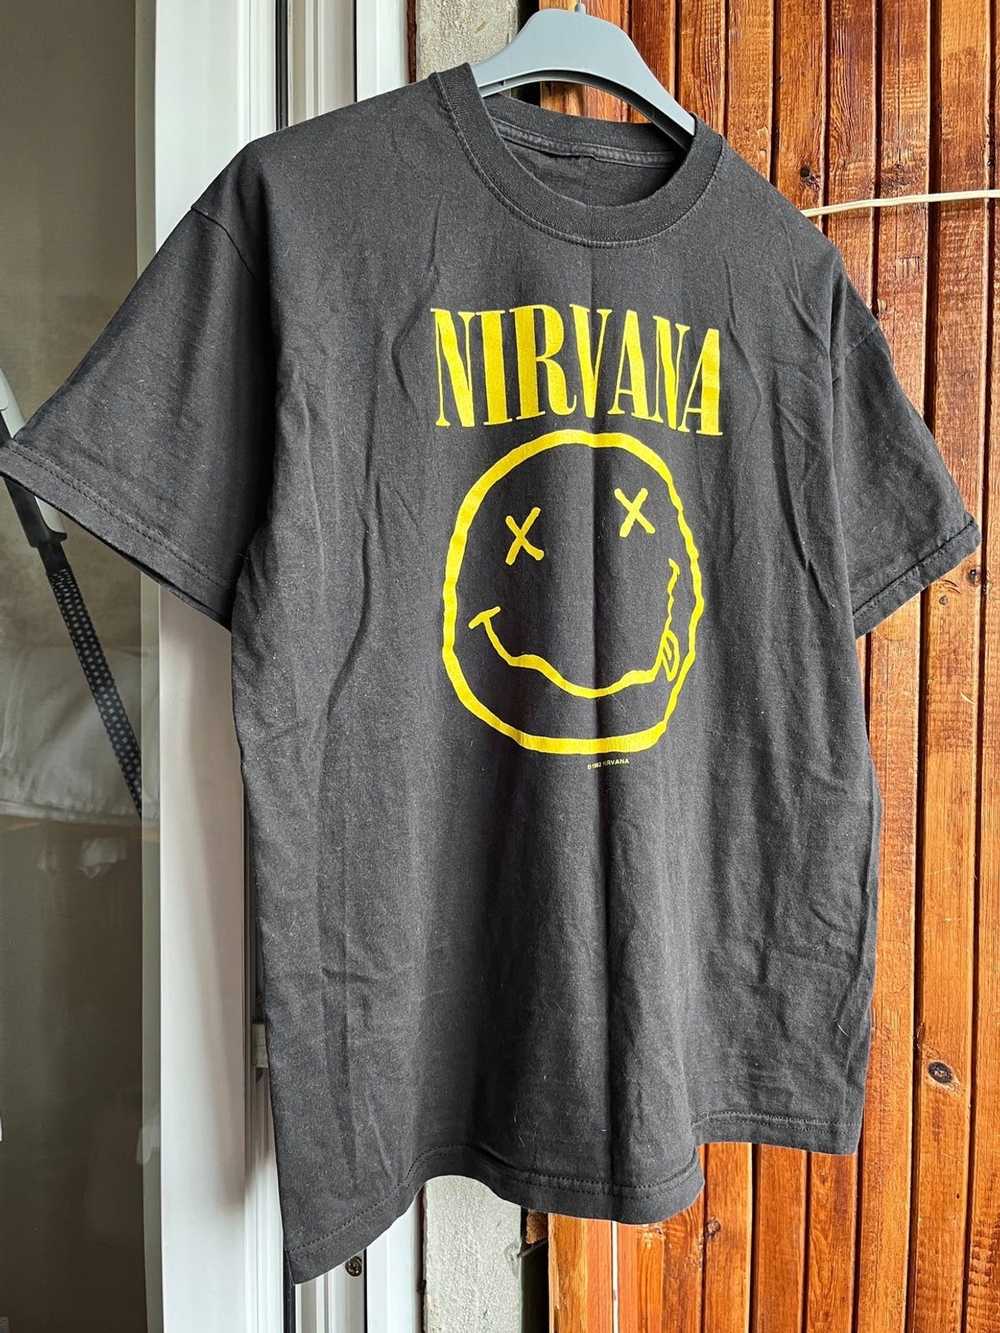 Band Tees × Nirvana × Vintage Vintage 1992 Nirvan… - image 1